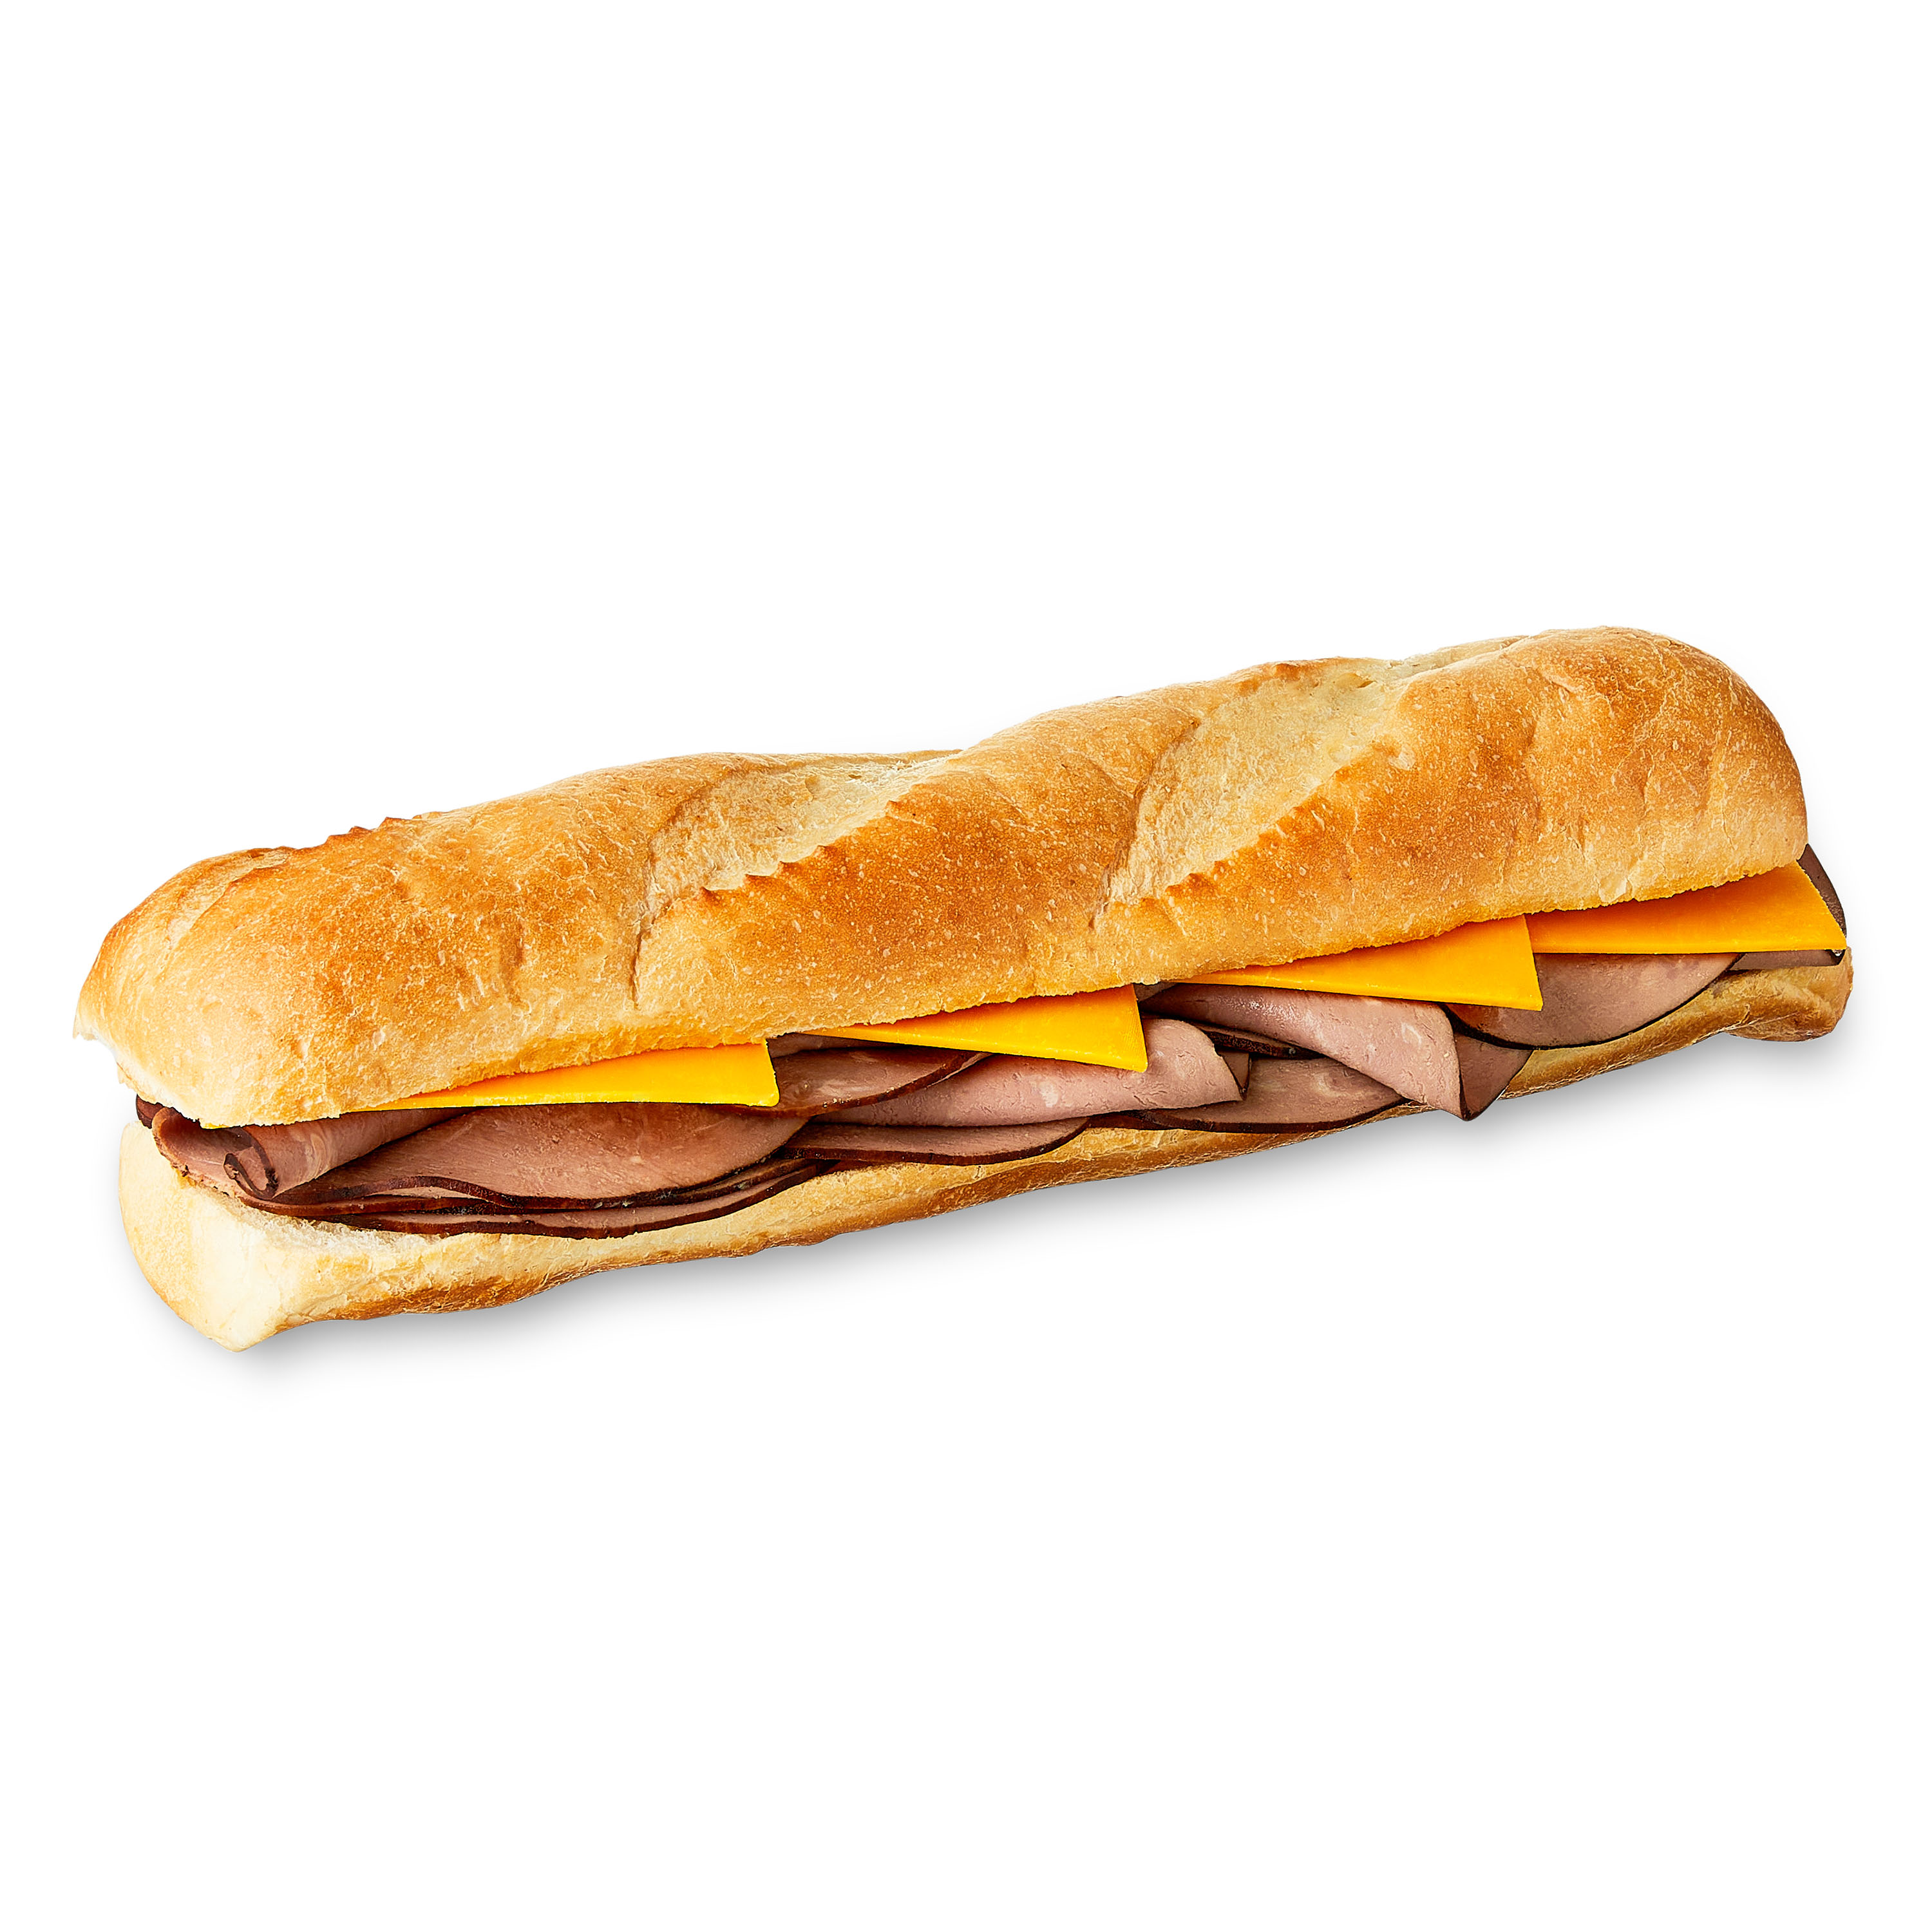 Marketside Roast Beef & Cheddar Sub Sandwich, Full, 14 oz, 1 Count (Fresh) - image 1 of 7